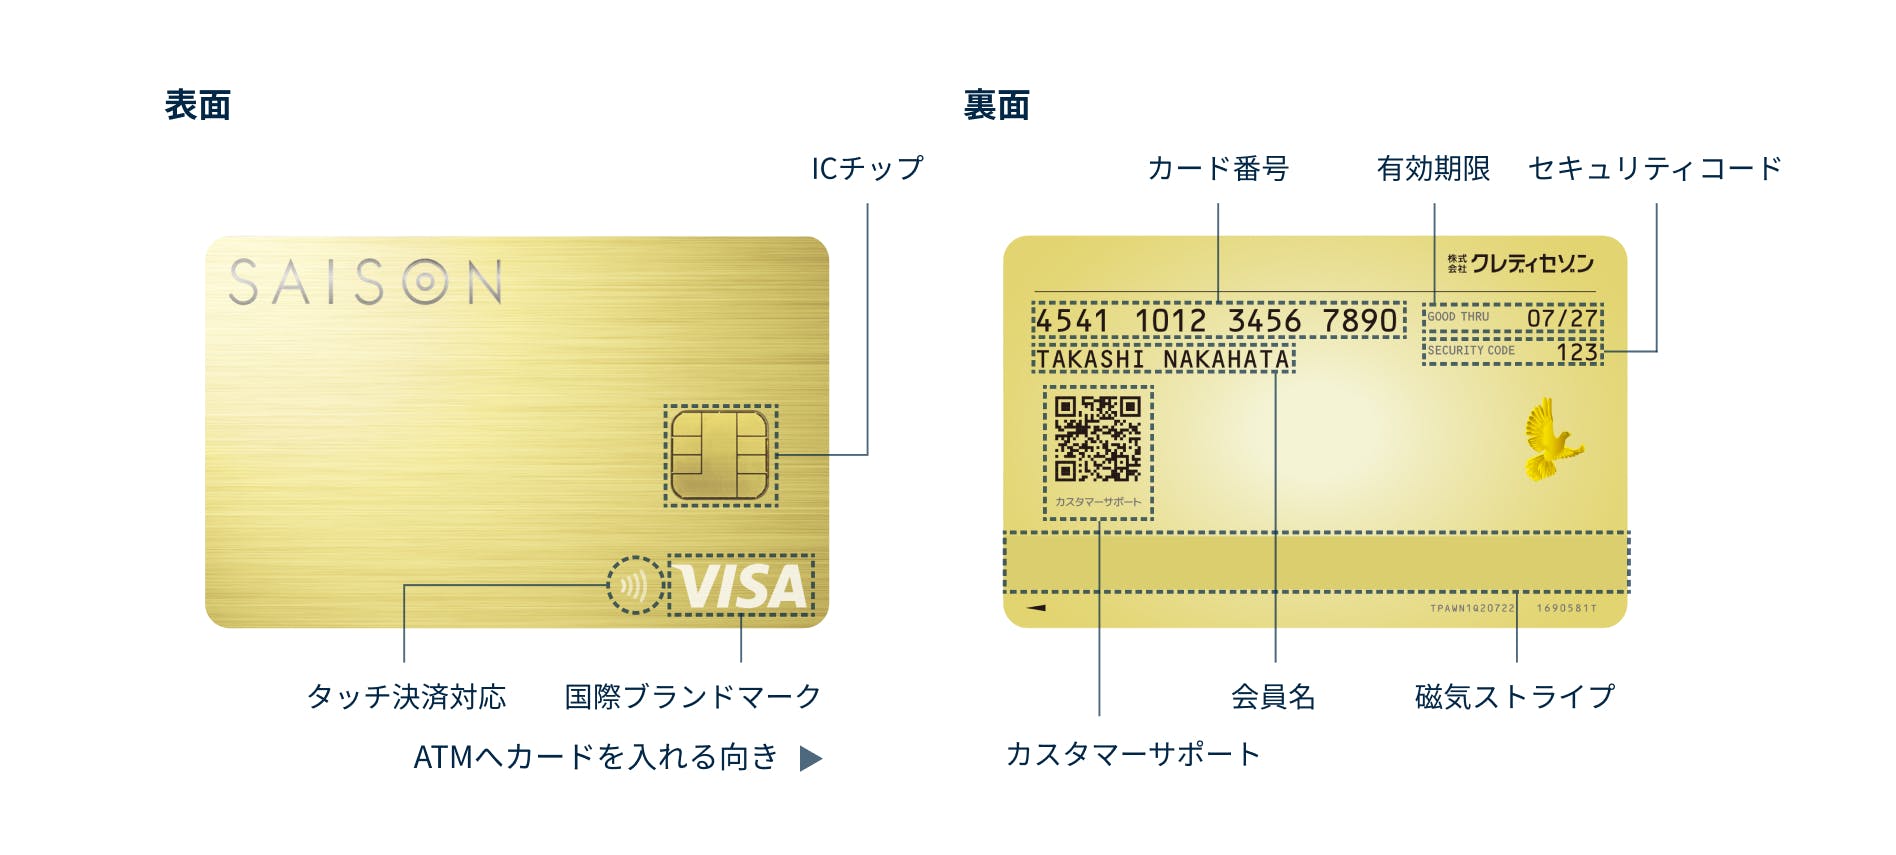 カード券面表：タッチ決済対応、国際ブランドマーク、ICチップ、ATMカードを入れる向き。カード裏面の、カード番号、会員名、有効期限、セキュリティコード、カスタマーサポート、磁気ストライプをそれぞれ指している画像。